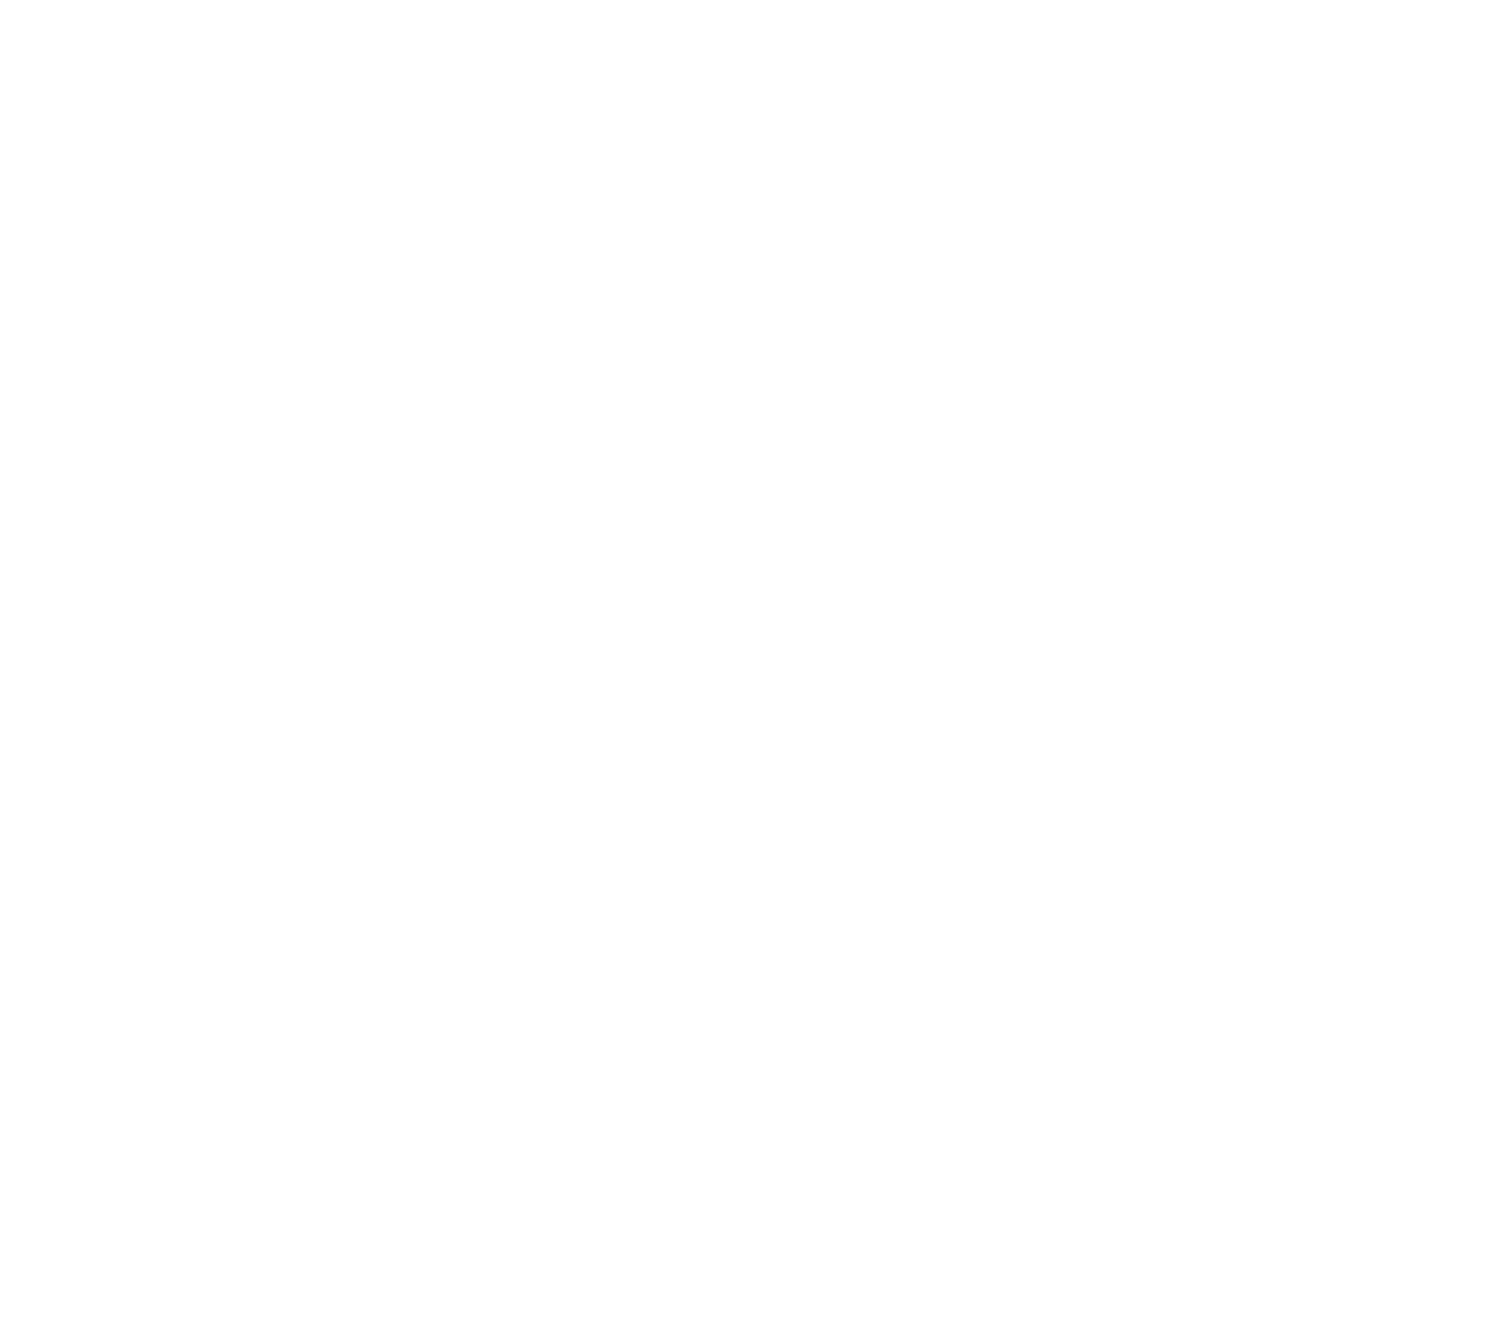 MYT Netherlands Parent (Mytheresa) logo for dark backgrounds (transparent PNG)